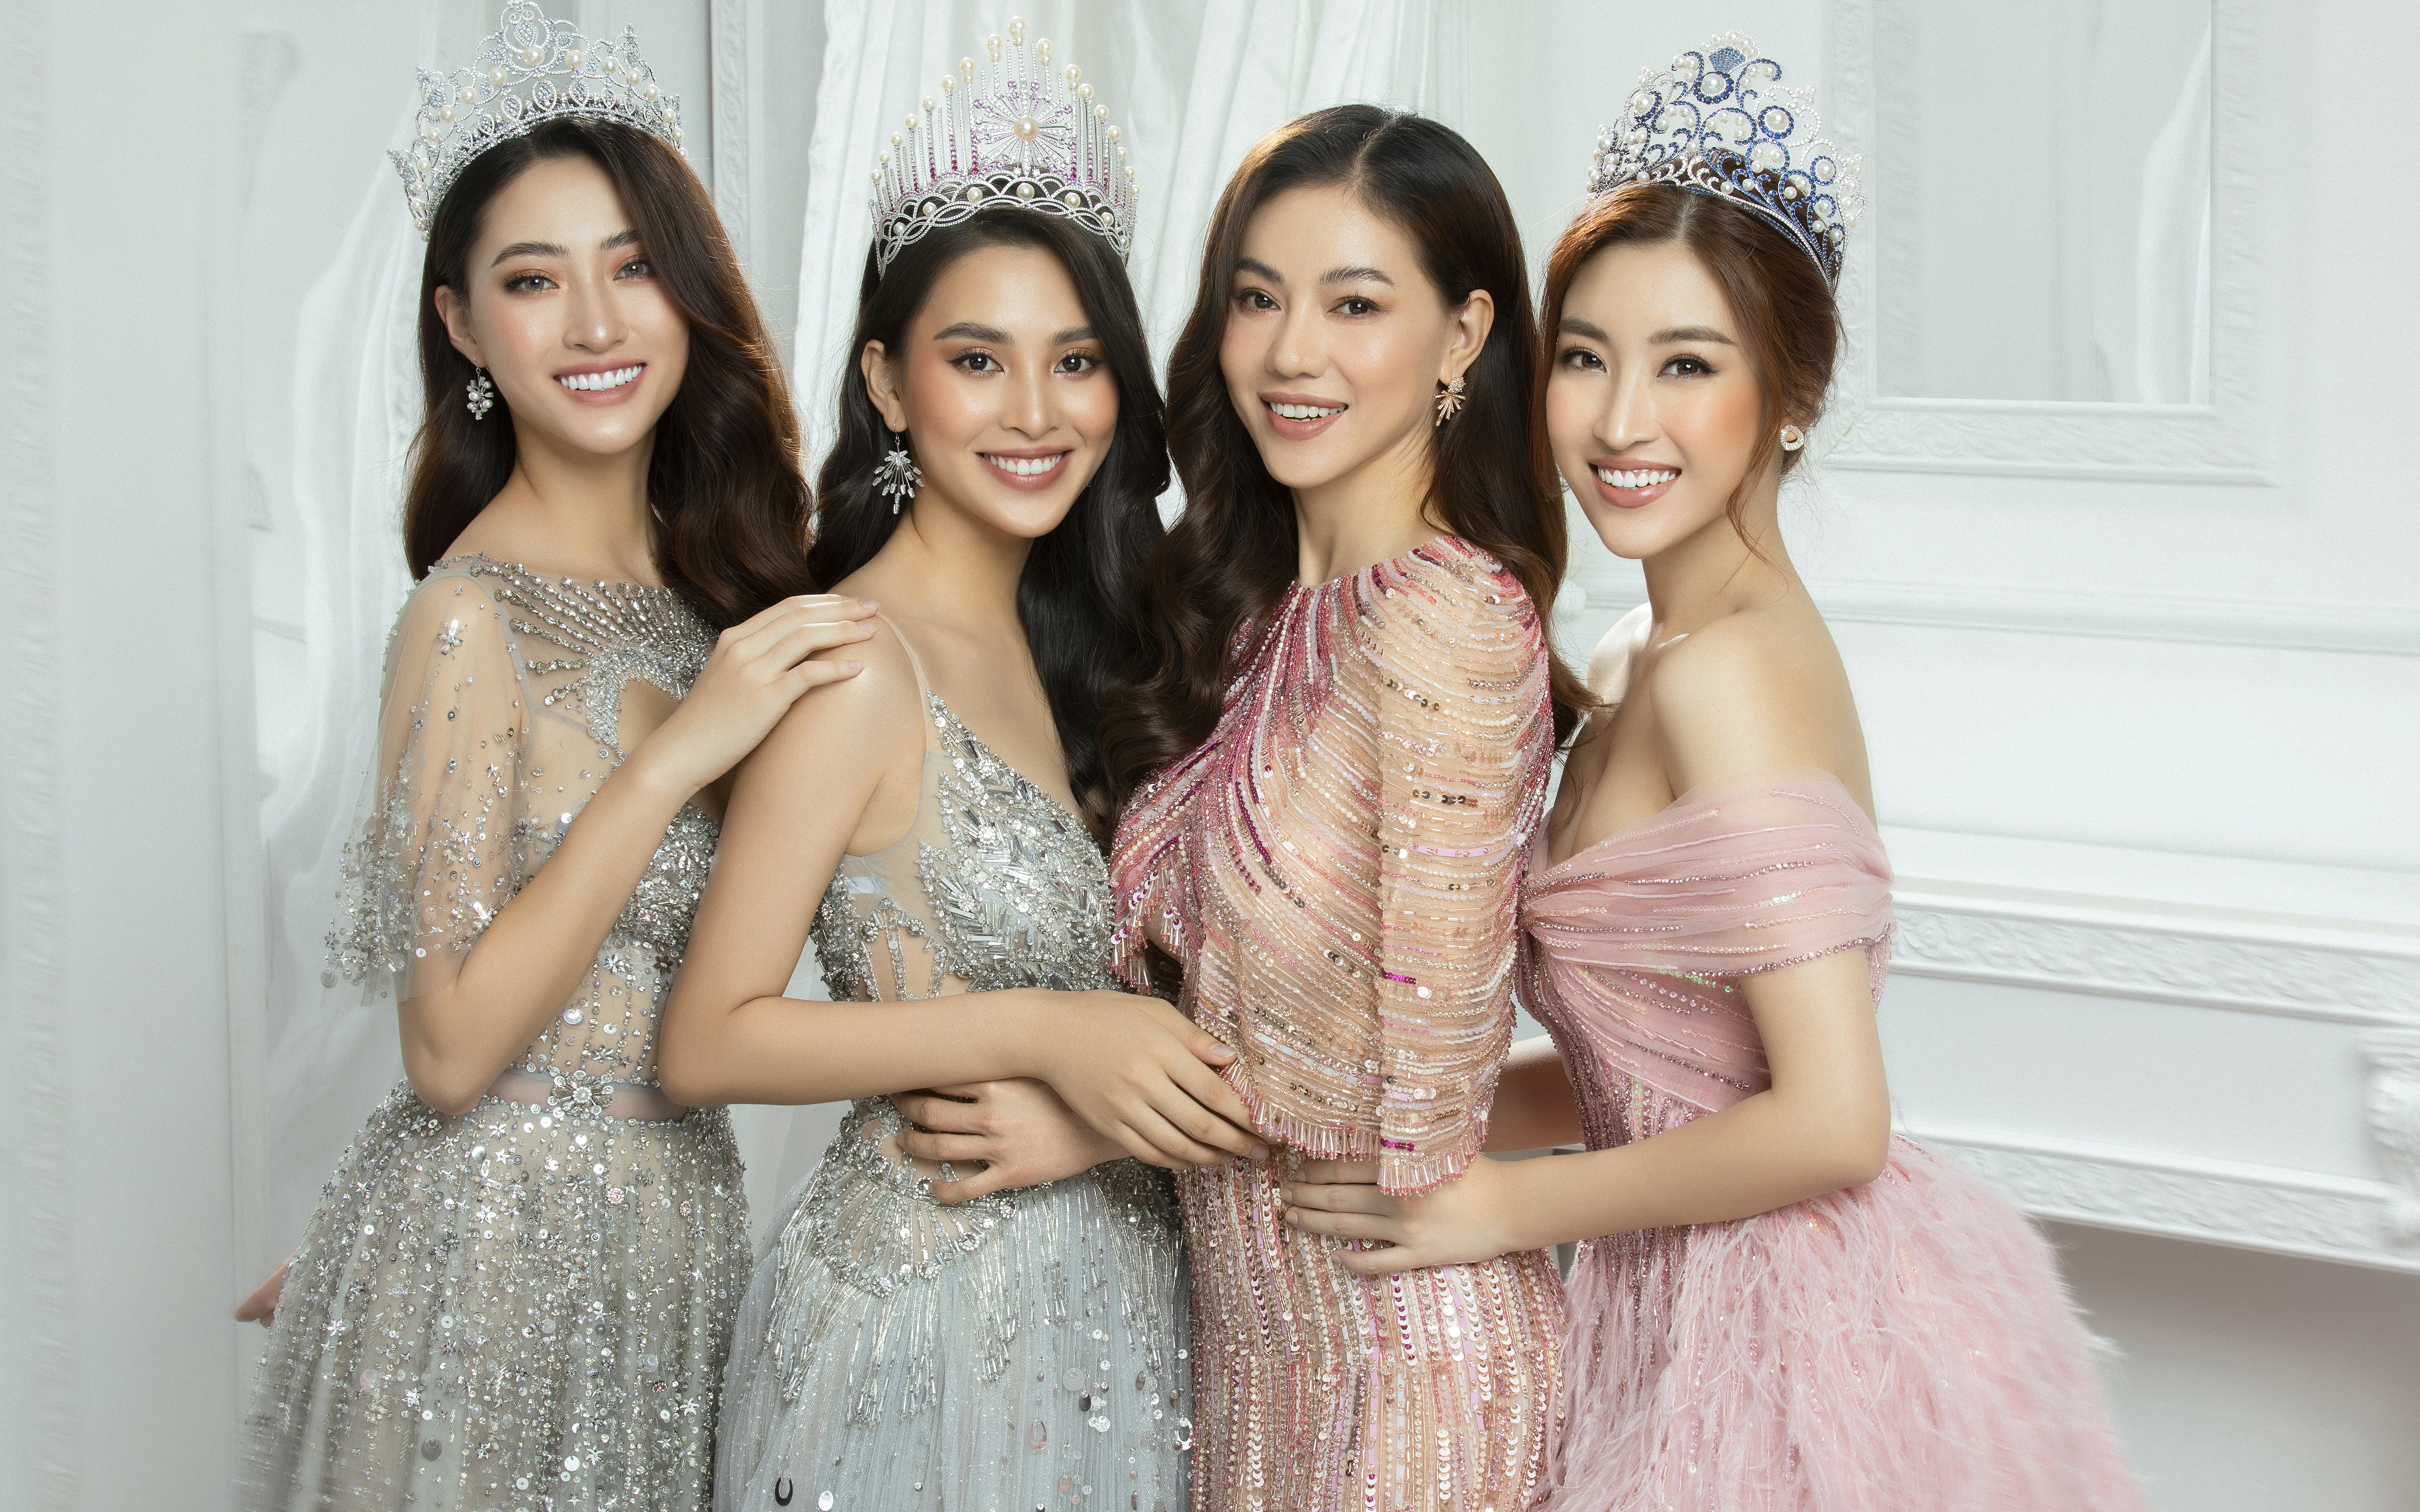 Bộ ba Hoa hậu Tiểu Vy - Mỹ Linh - Thùy Linh "đẹp rụng rời" khi đọ vương miện trong bộ ảnh mới